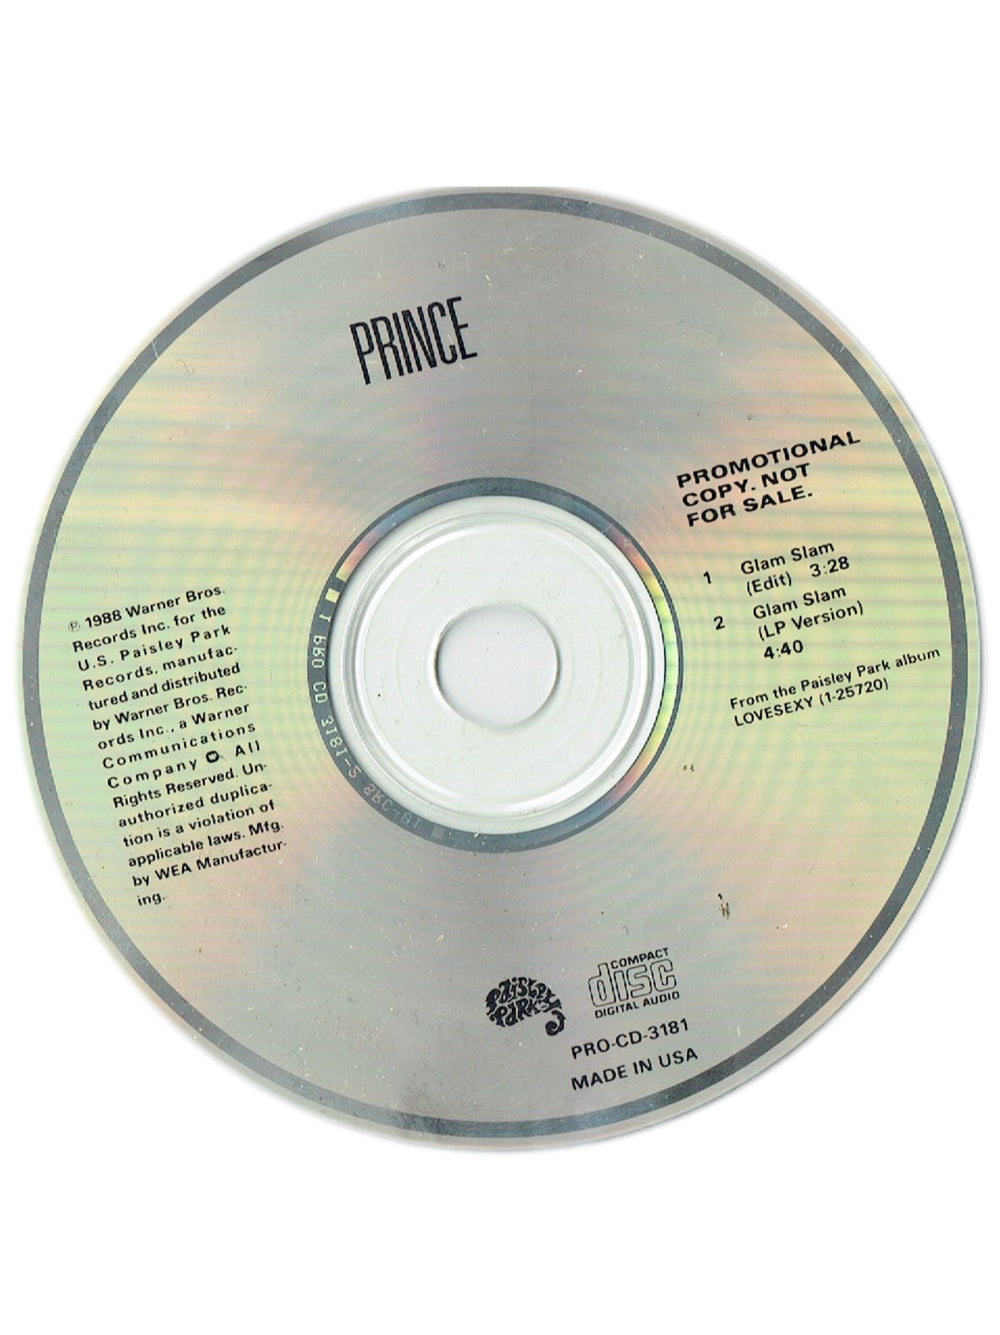 Prince – Glam Slam CD Single Promo US Preloved: 1988*